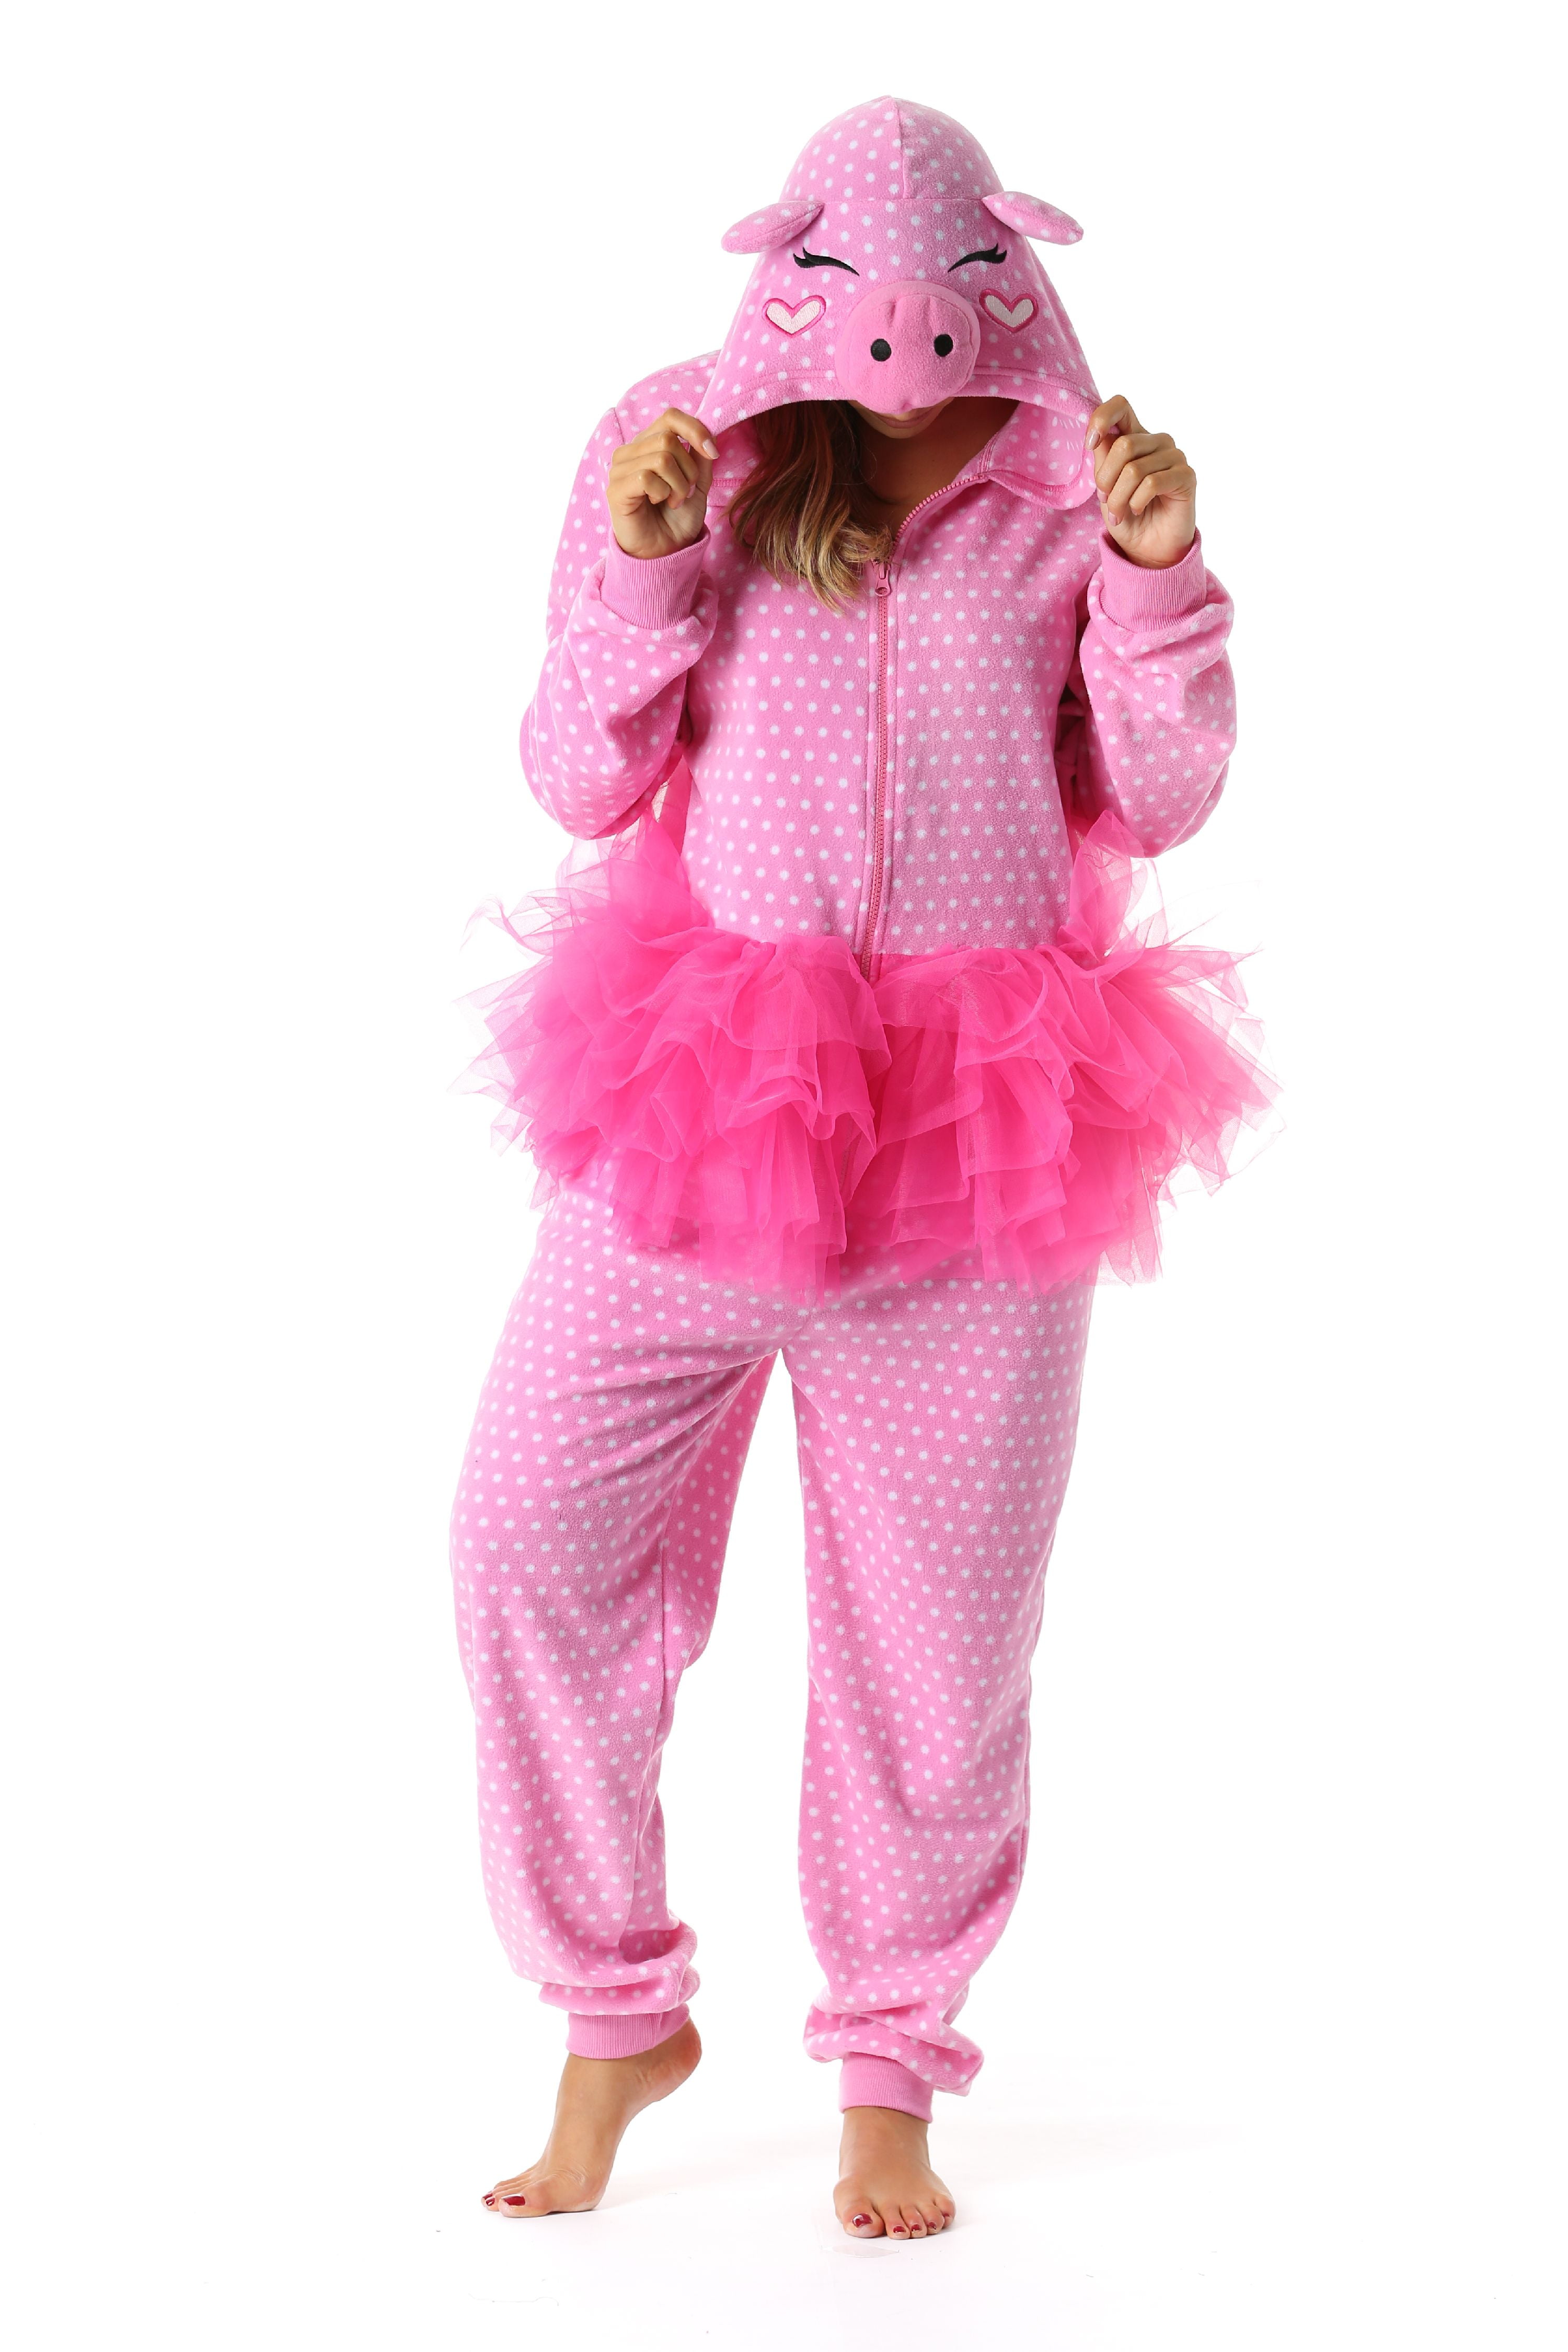 Just Love - Just Love Pig in Tutu Adult Onesie Womens Pajamas - Walmart